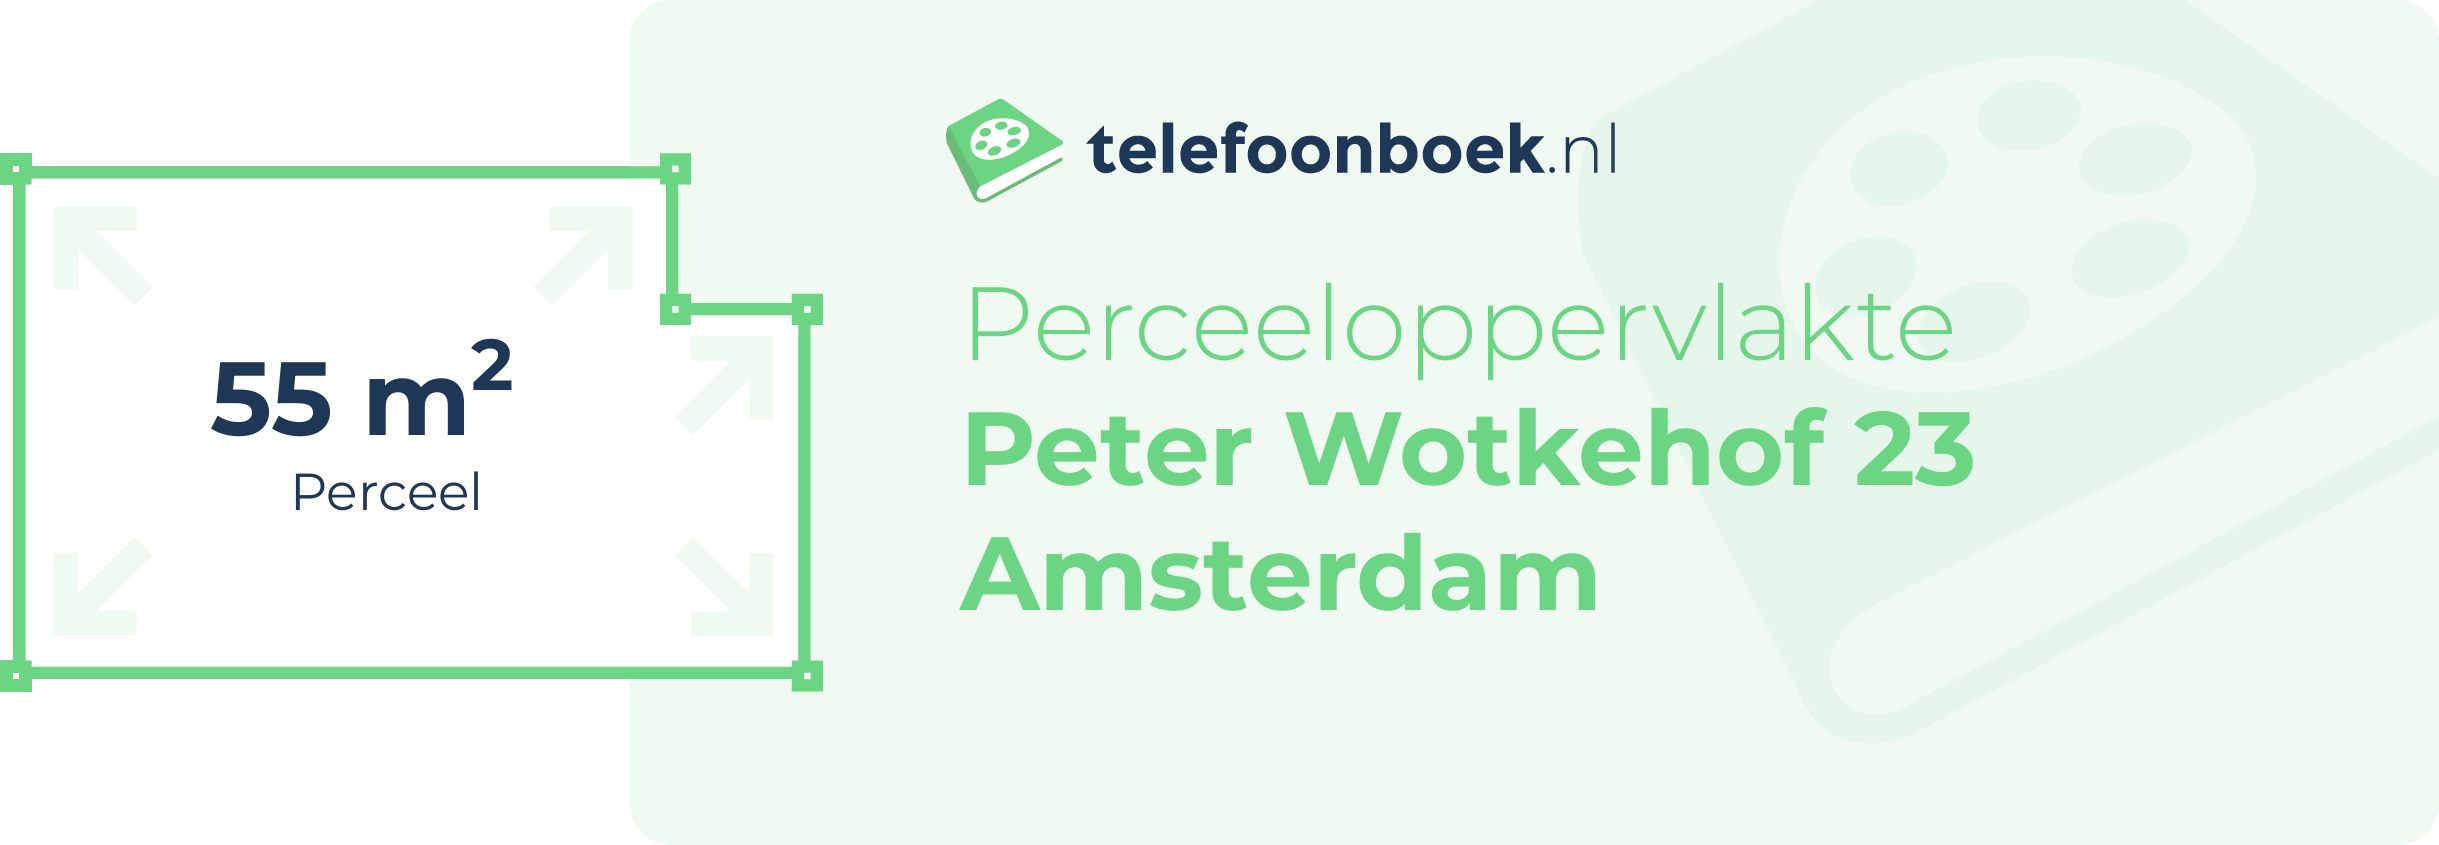 Perceeloppervlakte Peter Wotkehof 23 Amsterdam